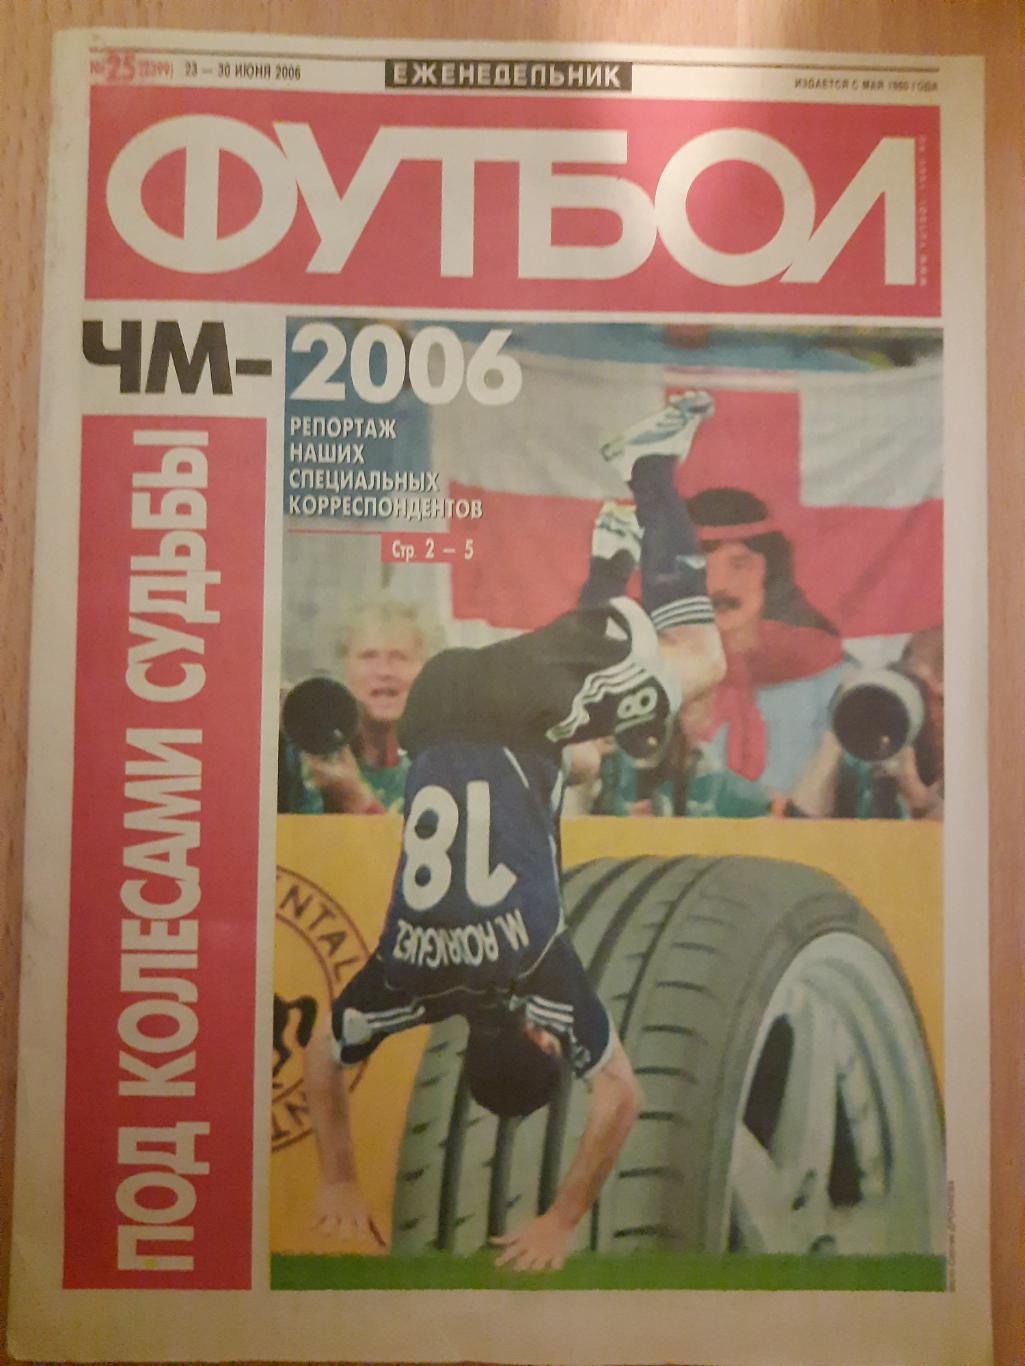 еженедельник Футбол #25 2006. ЧМ, Украина...